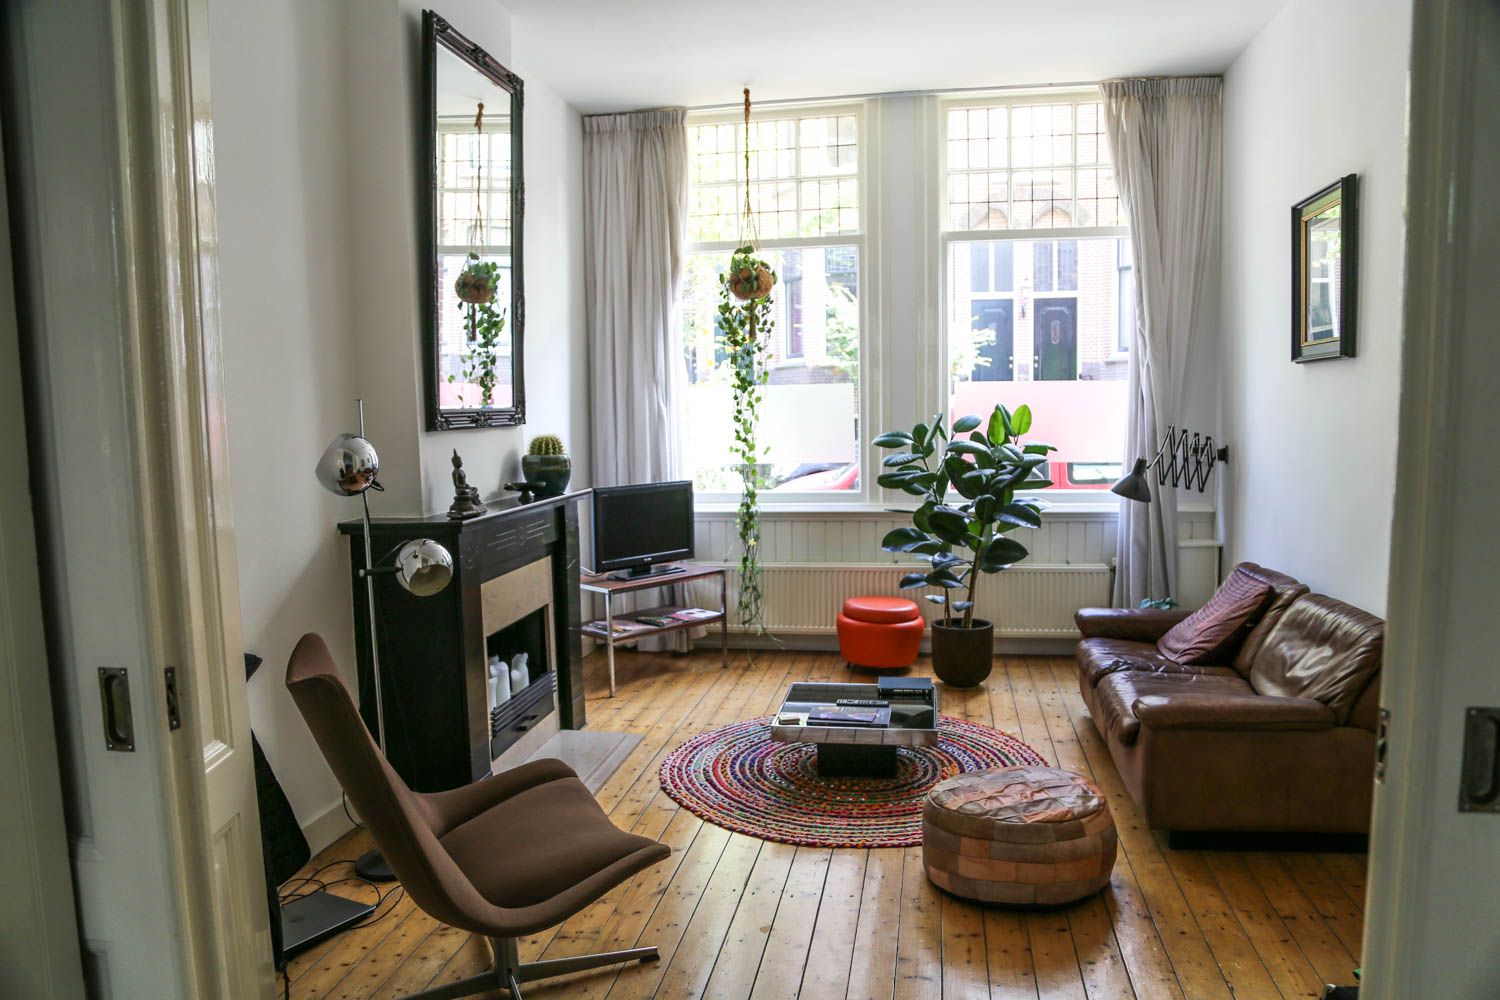 Kaunis airbnb-koti Amsterdamin kupeessa